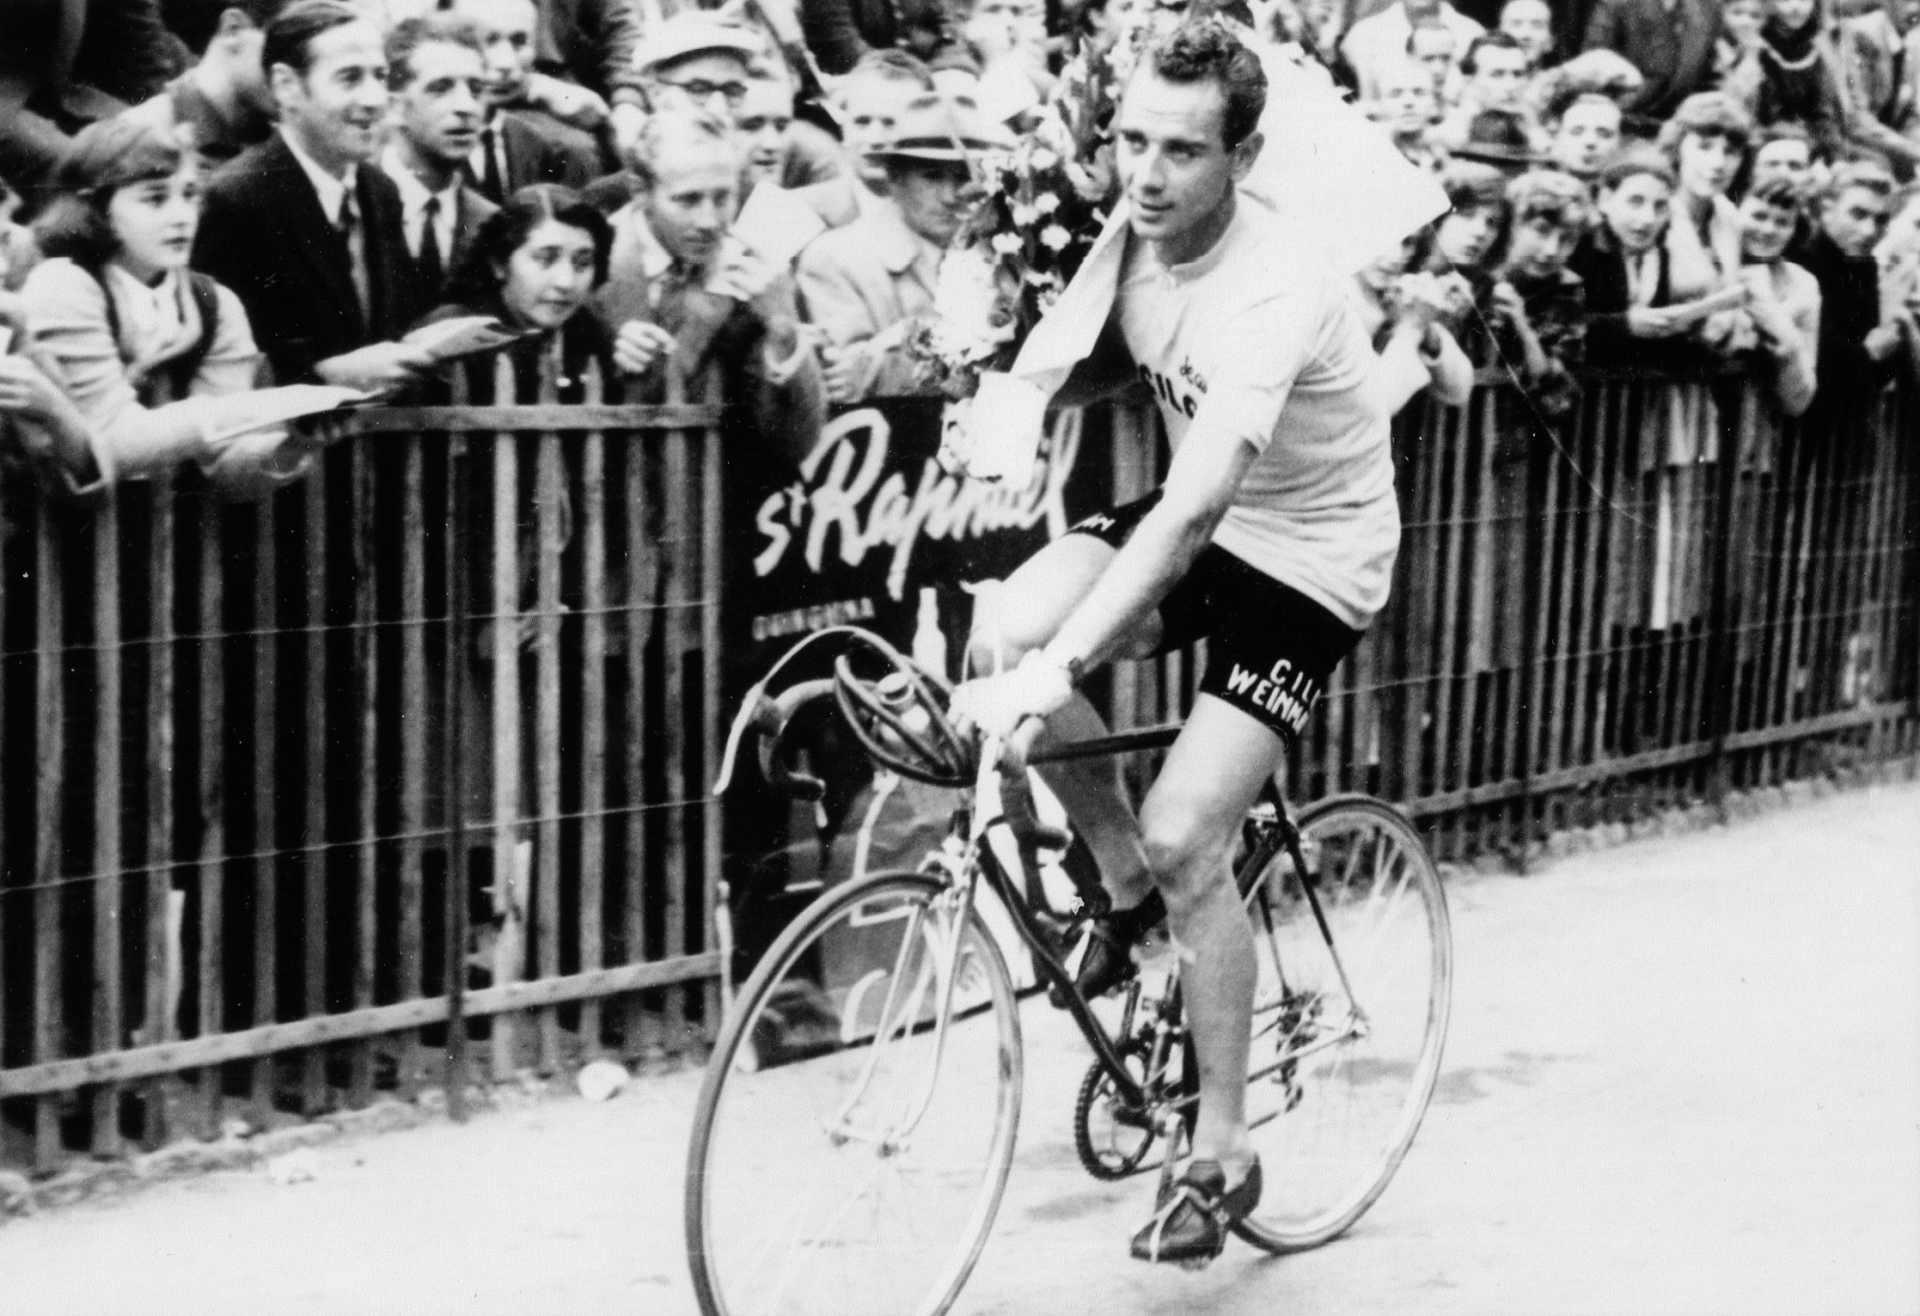 Des grands noms du cyclisme ont pris part au Critérium de Nyon, à l'image d'Hugo Koblet, vainqueur en 1951.